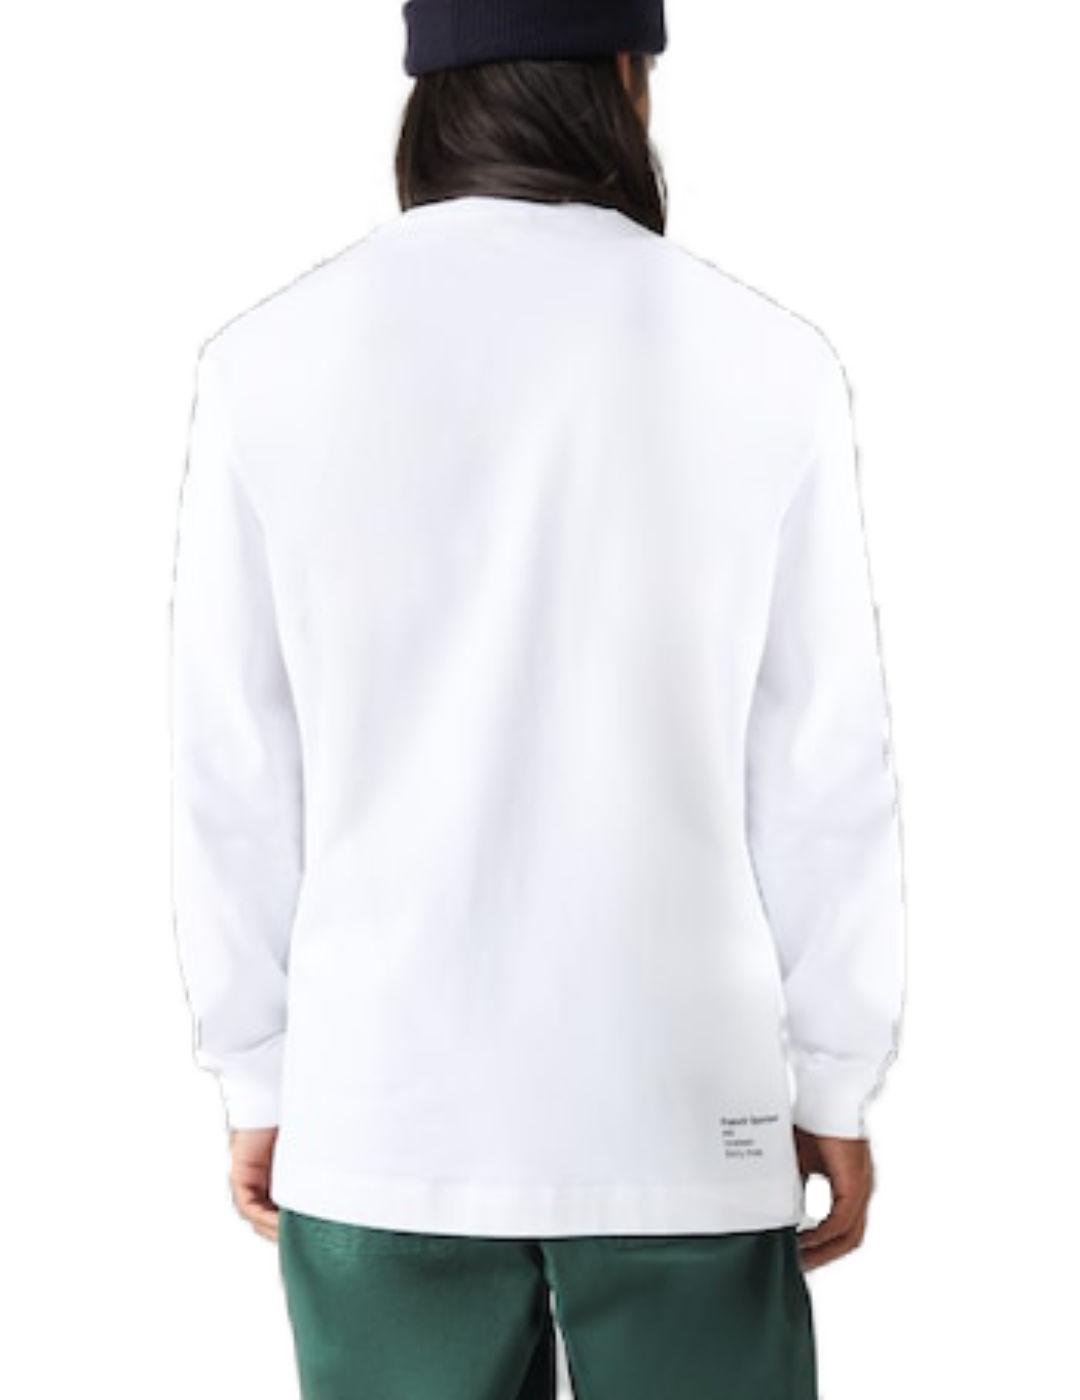 Camiseta Lacoste cuello redondo blanca de hombre-b